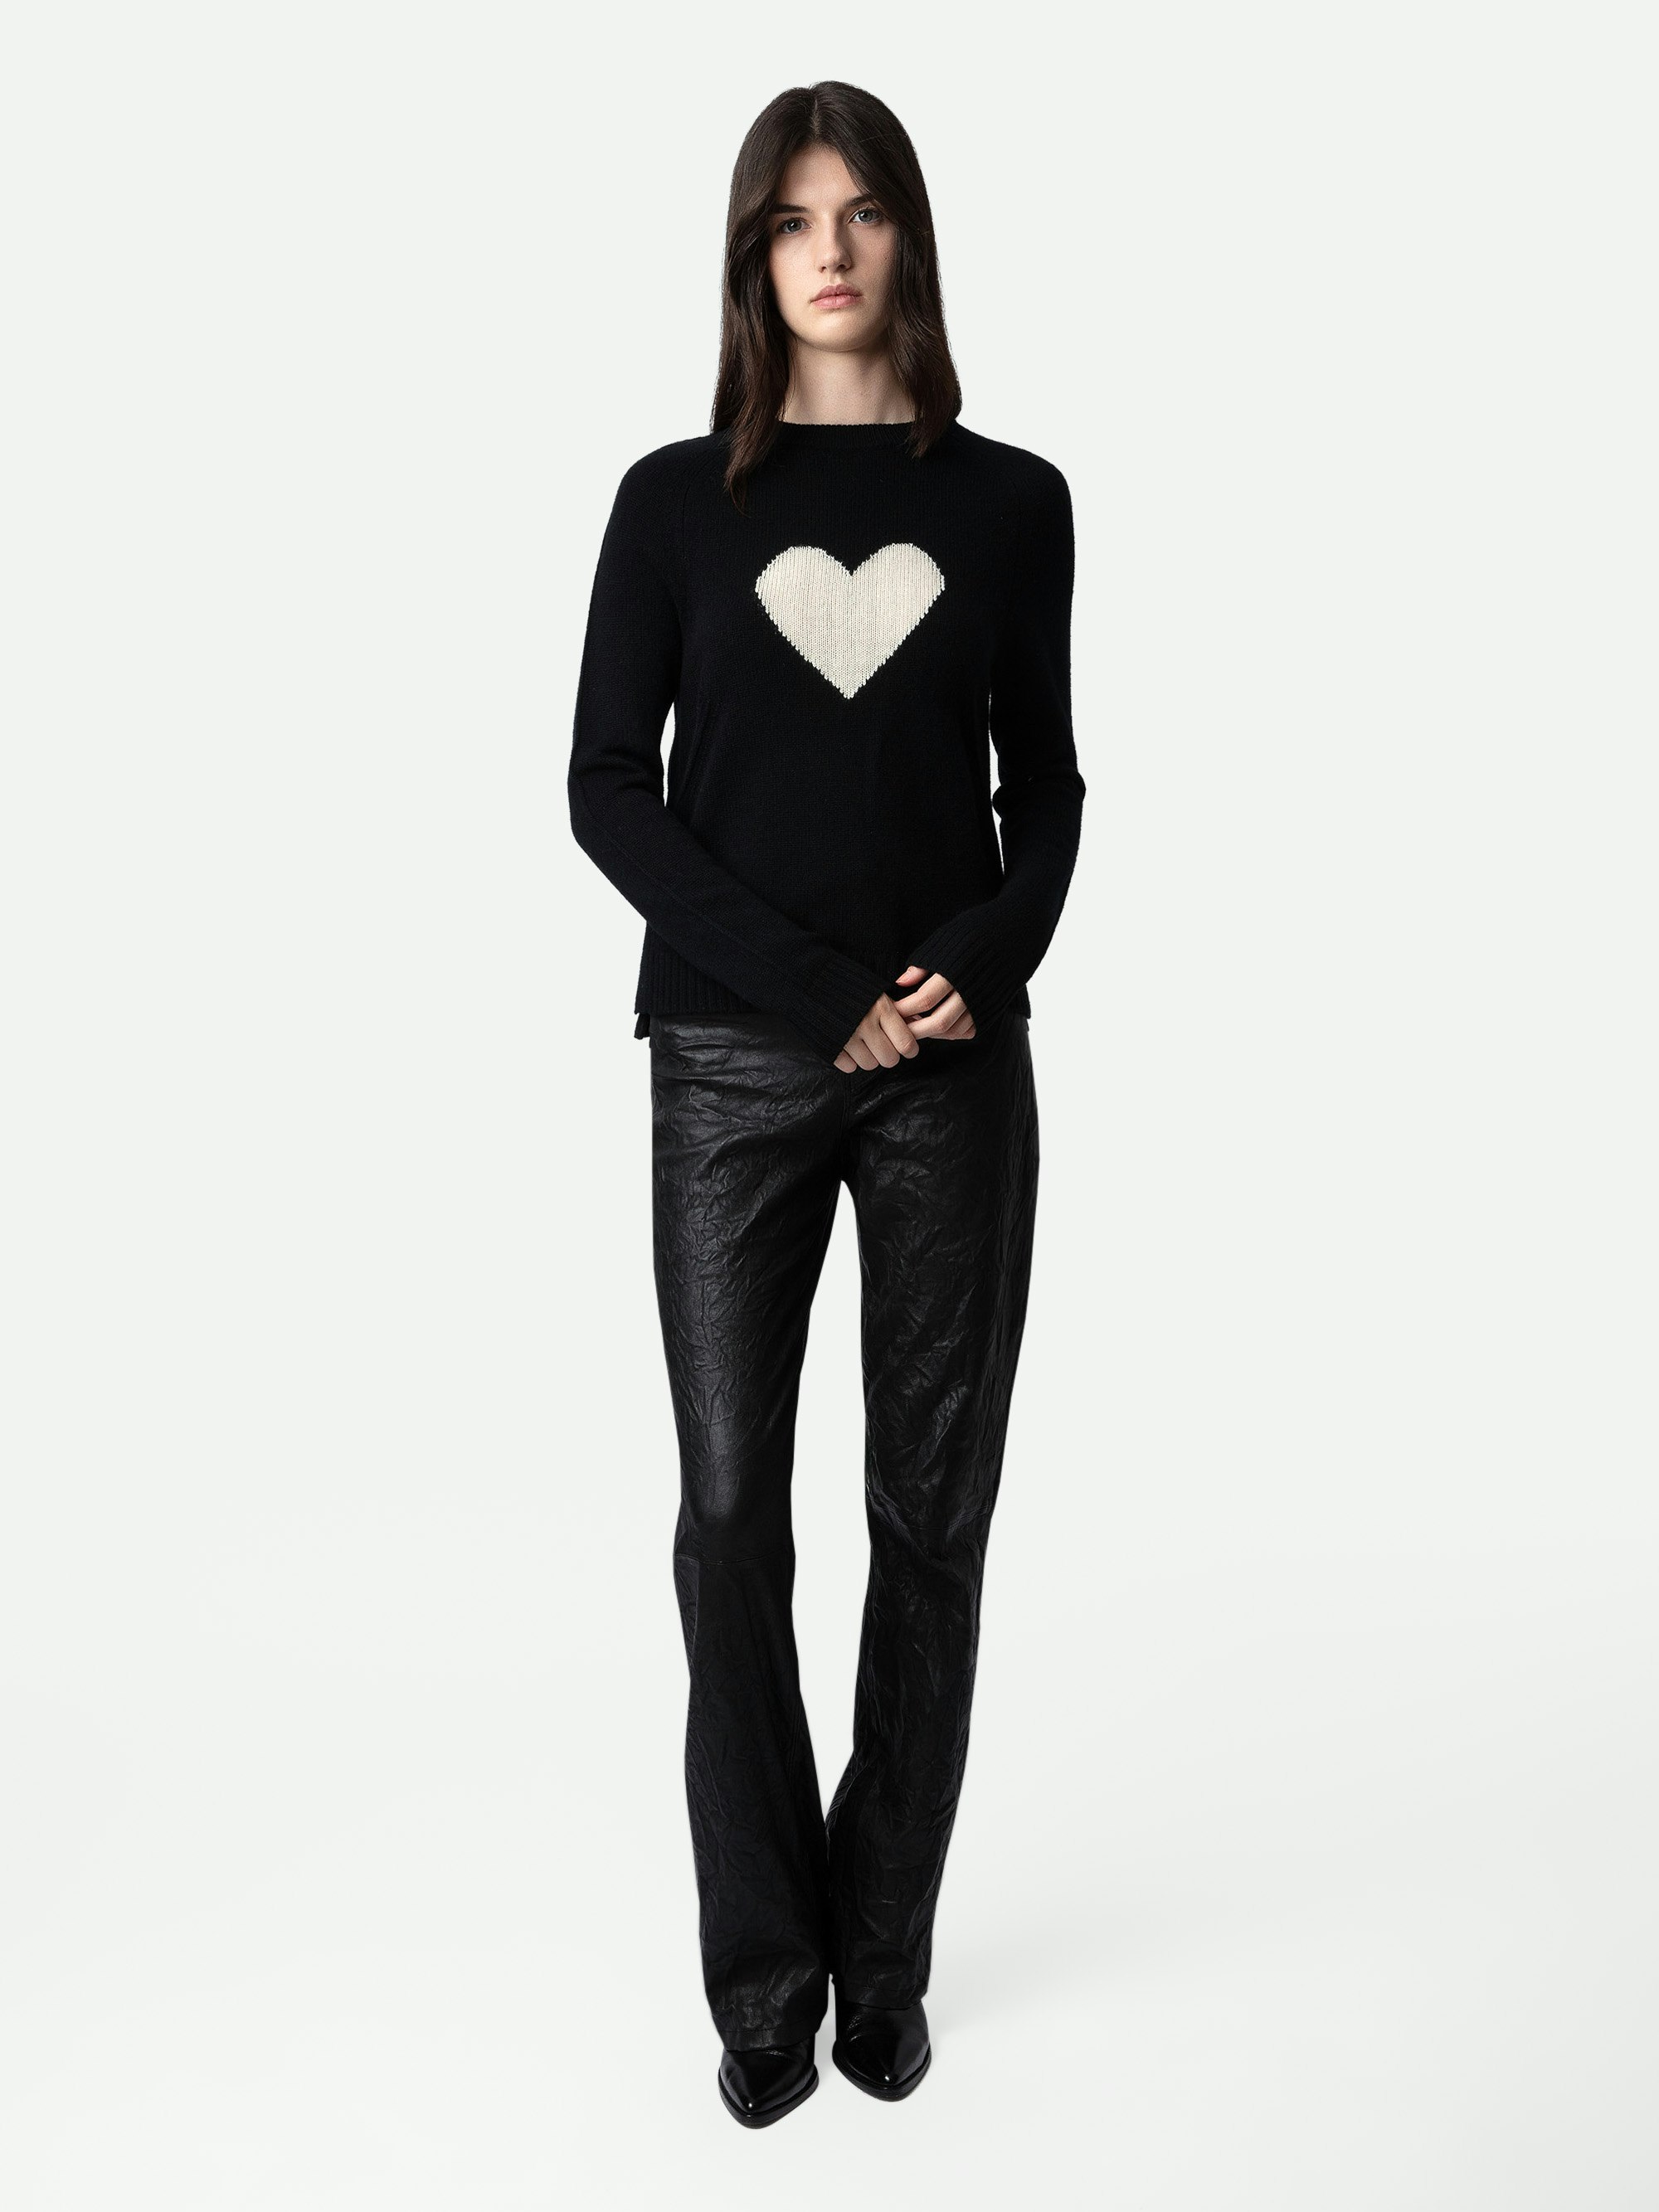 Pullover Lili 100% Kaschmir - Schwarzer Pullover aus 100% Kaschmir mit Herzmotiv auf der Vorderseite.